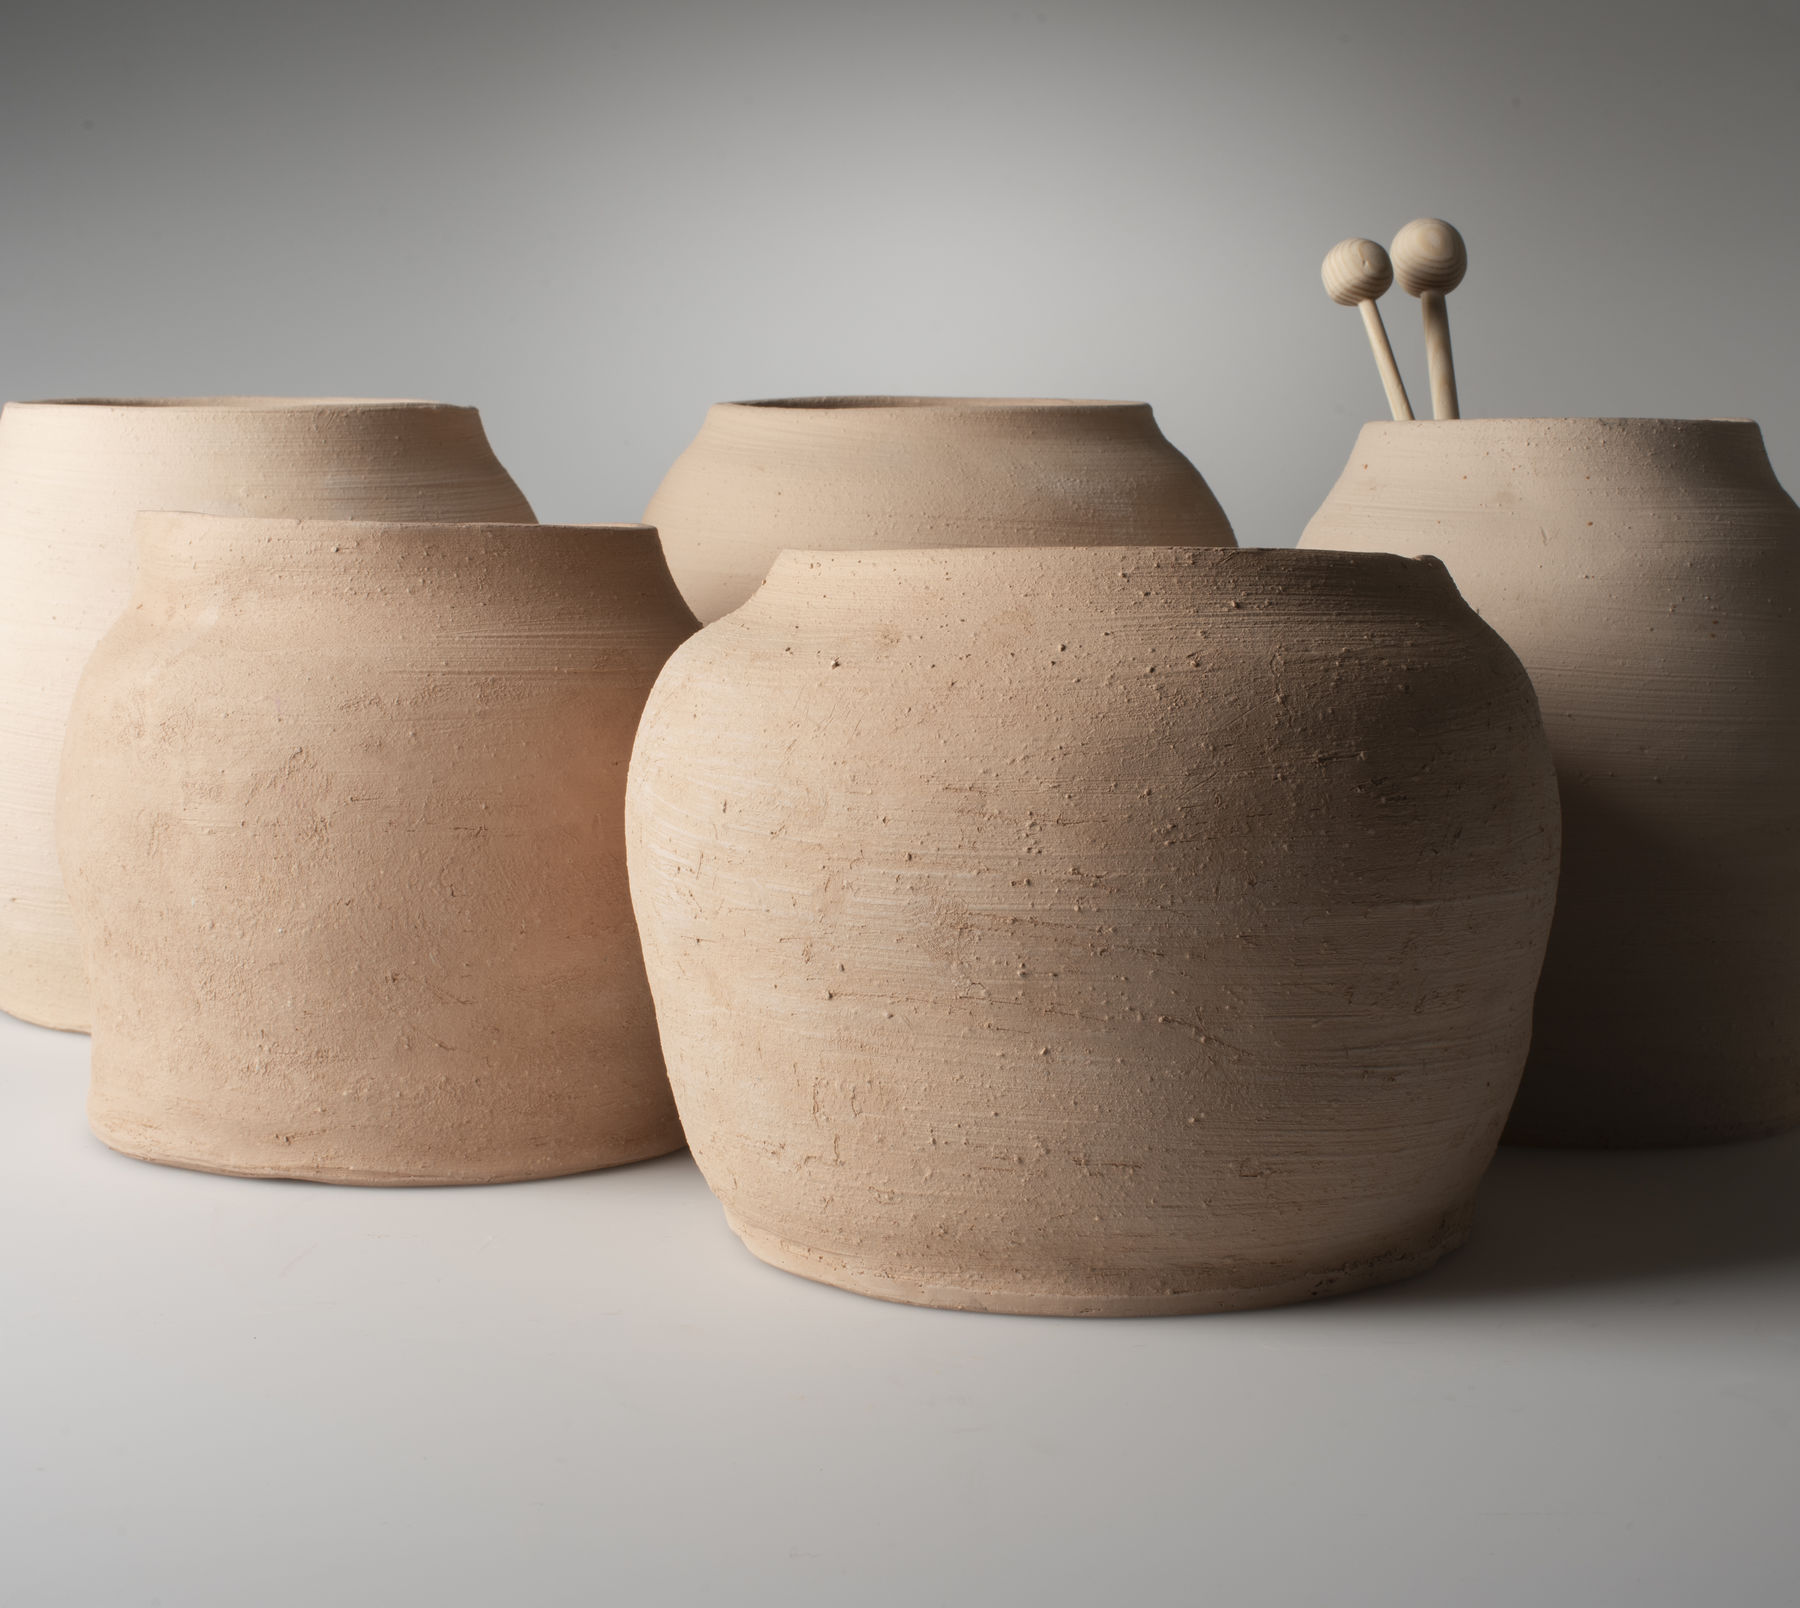 a close-up of five ceramic pots